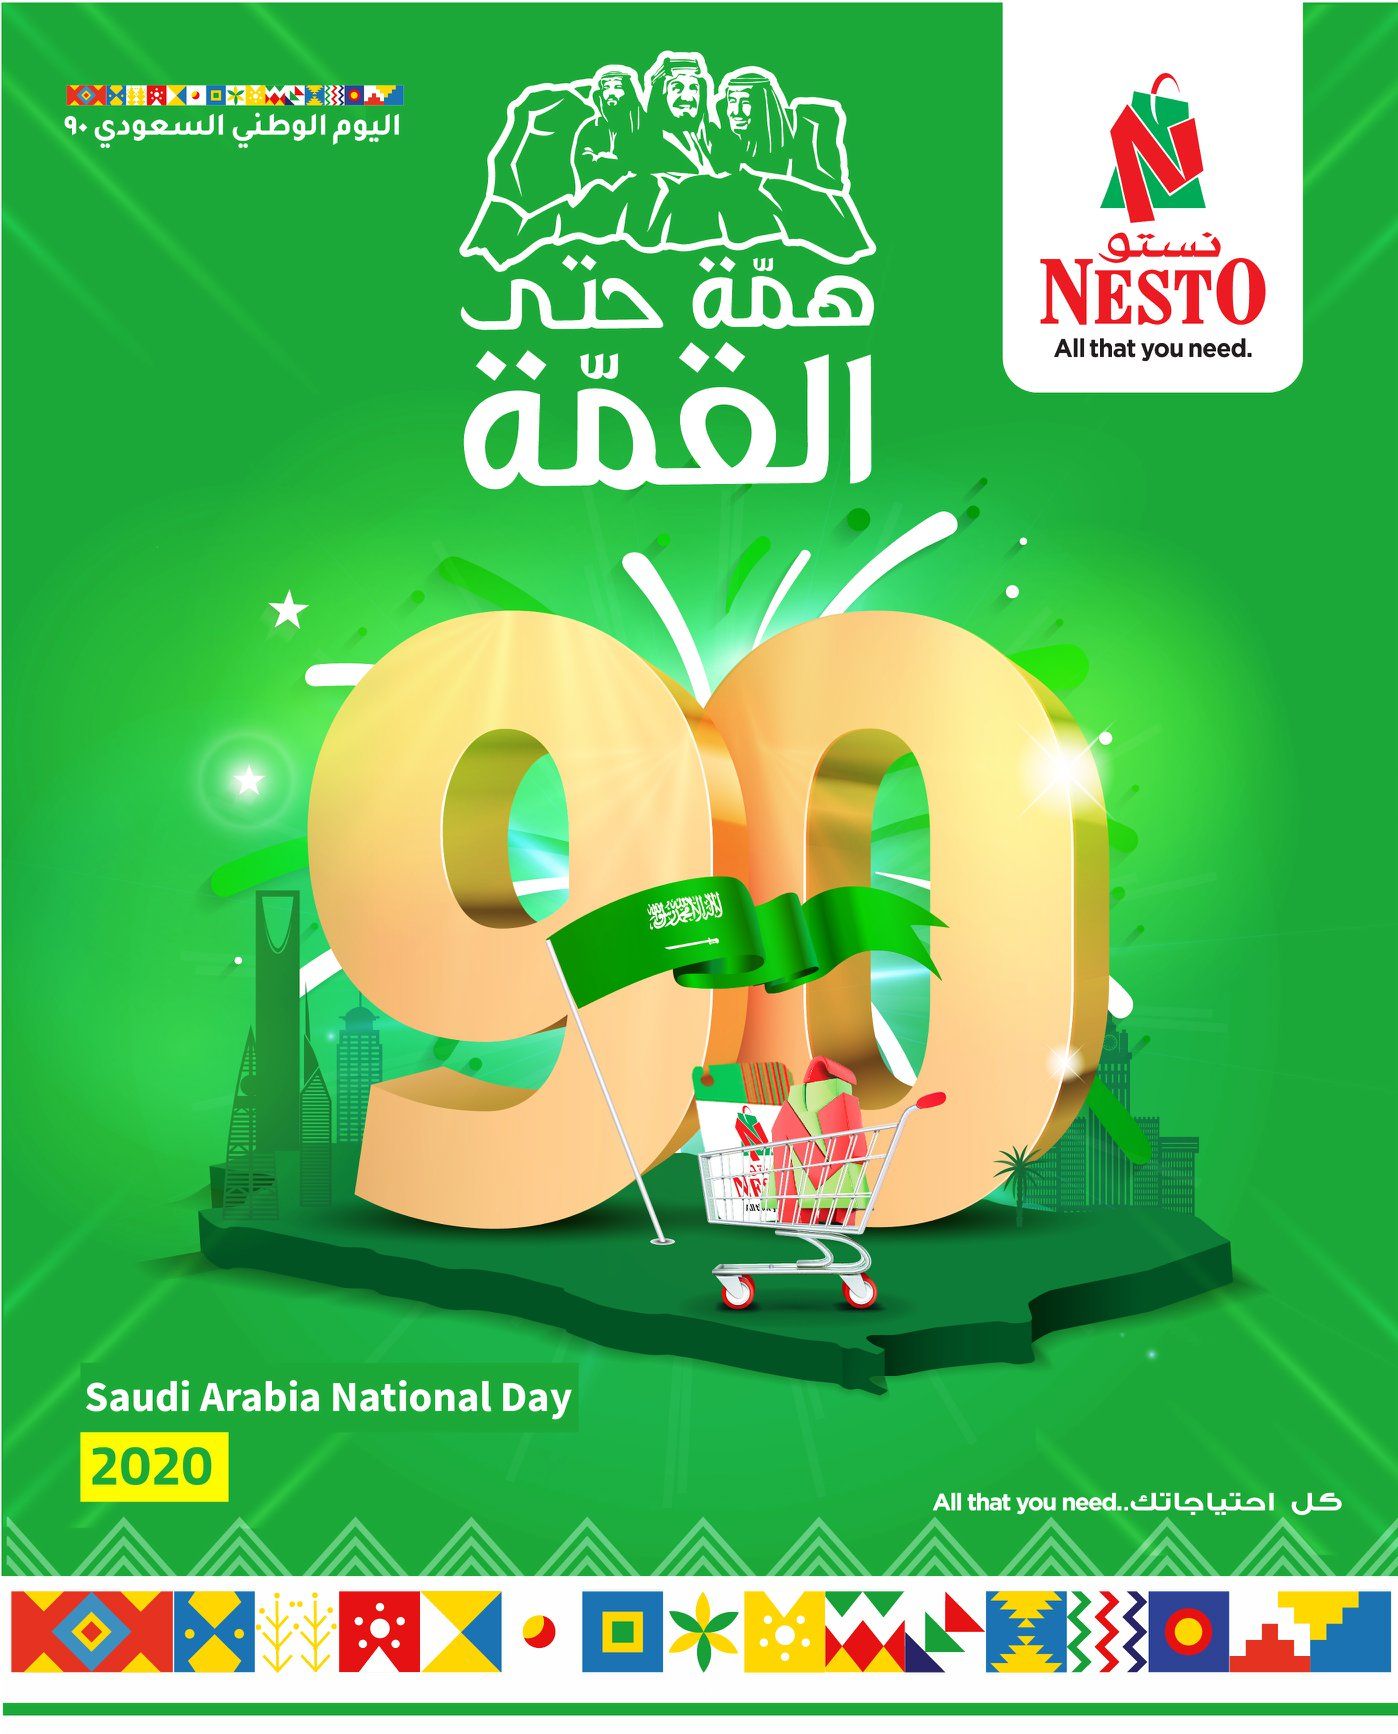 fNdHUJ - تذكير باليوم الاخير من عروض نستو الرياض الثلاثاء 29-9-2020 عروض اليوم الوطني 90